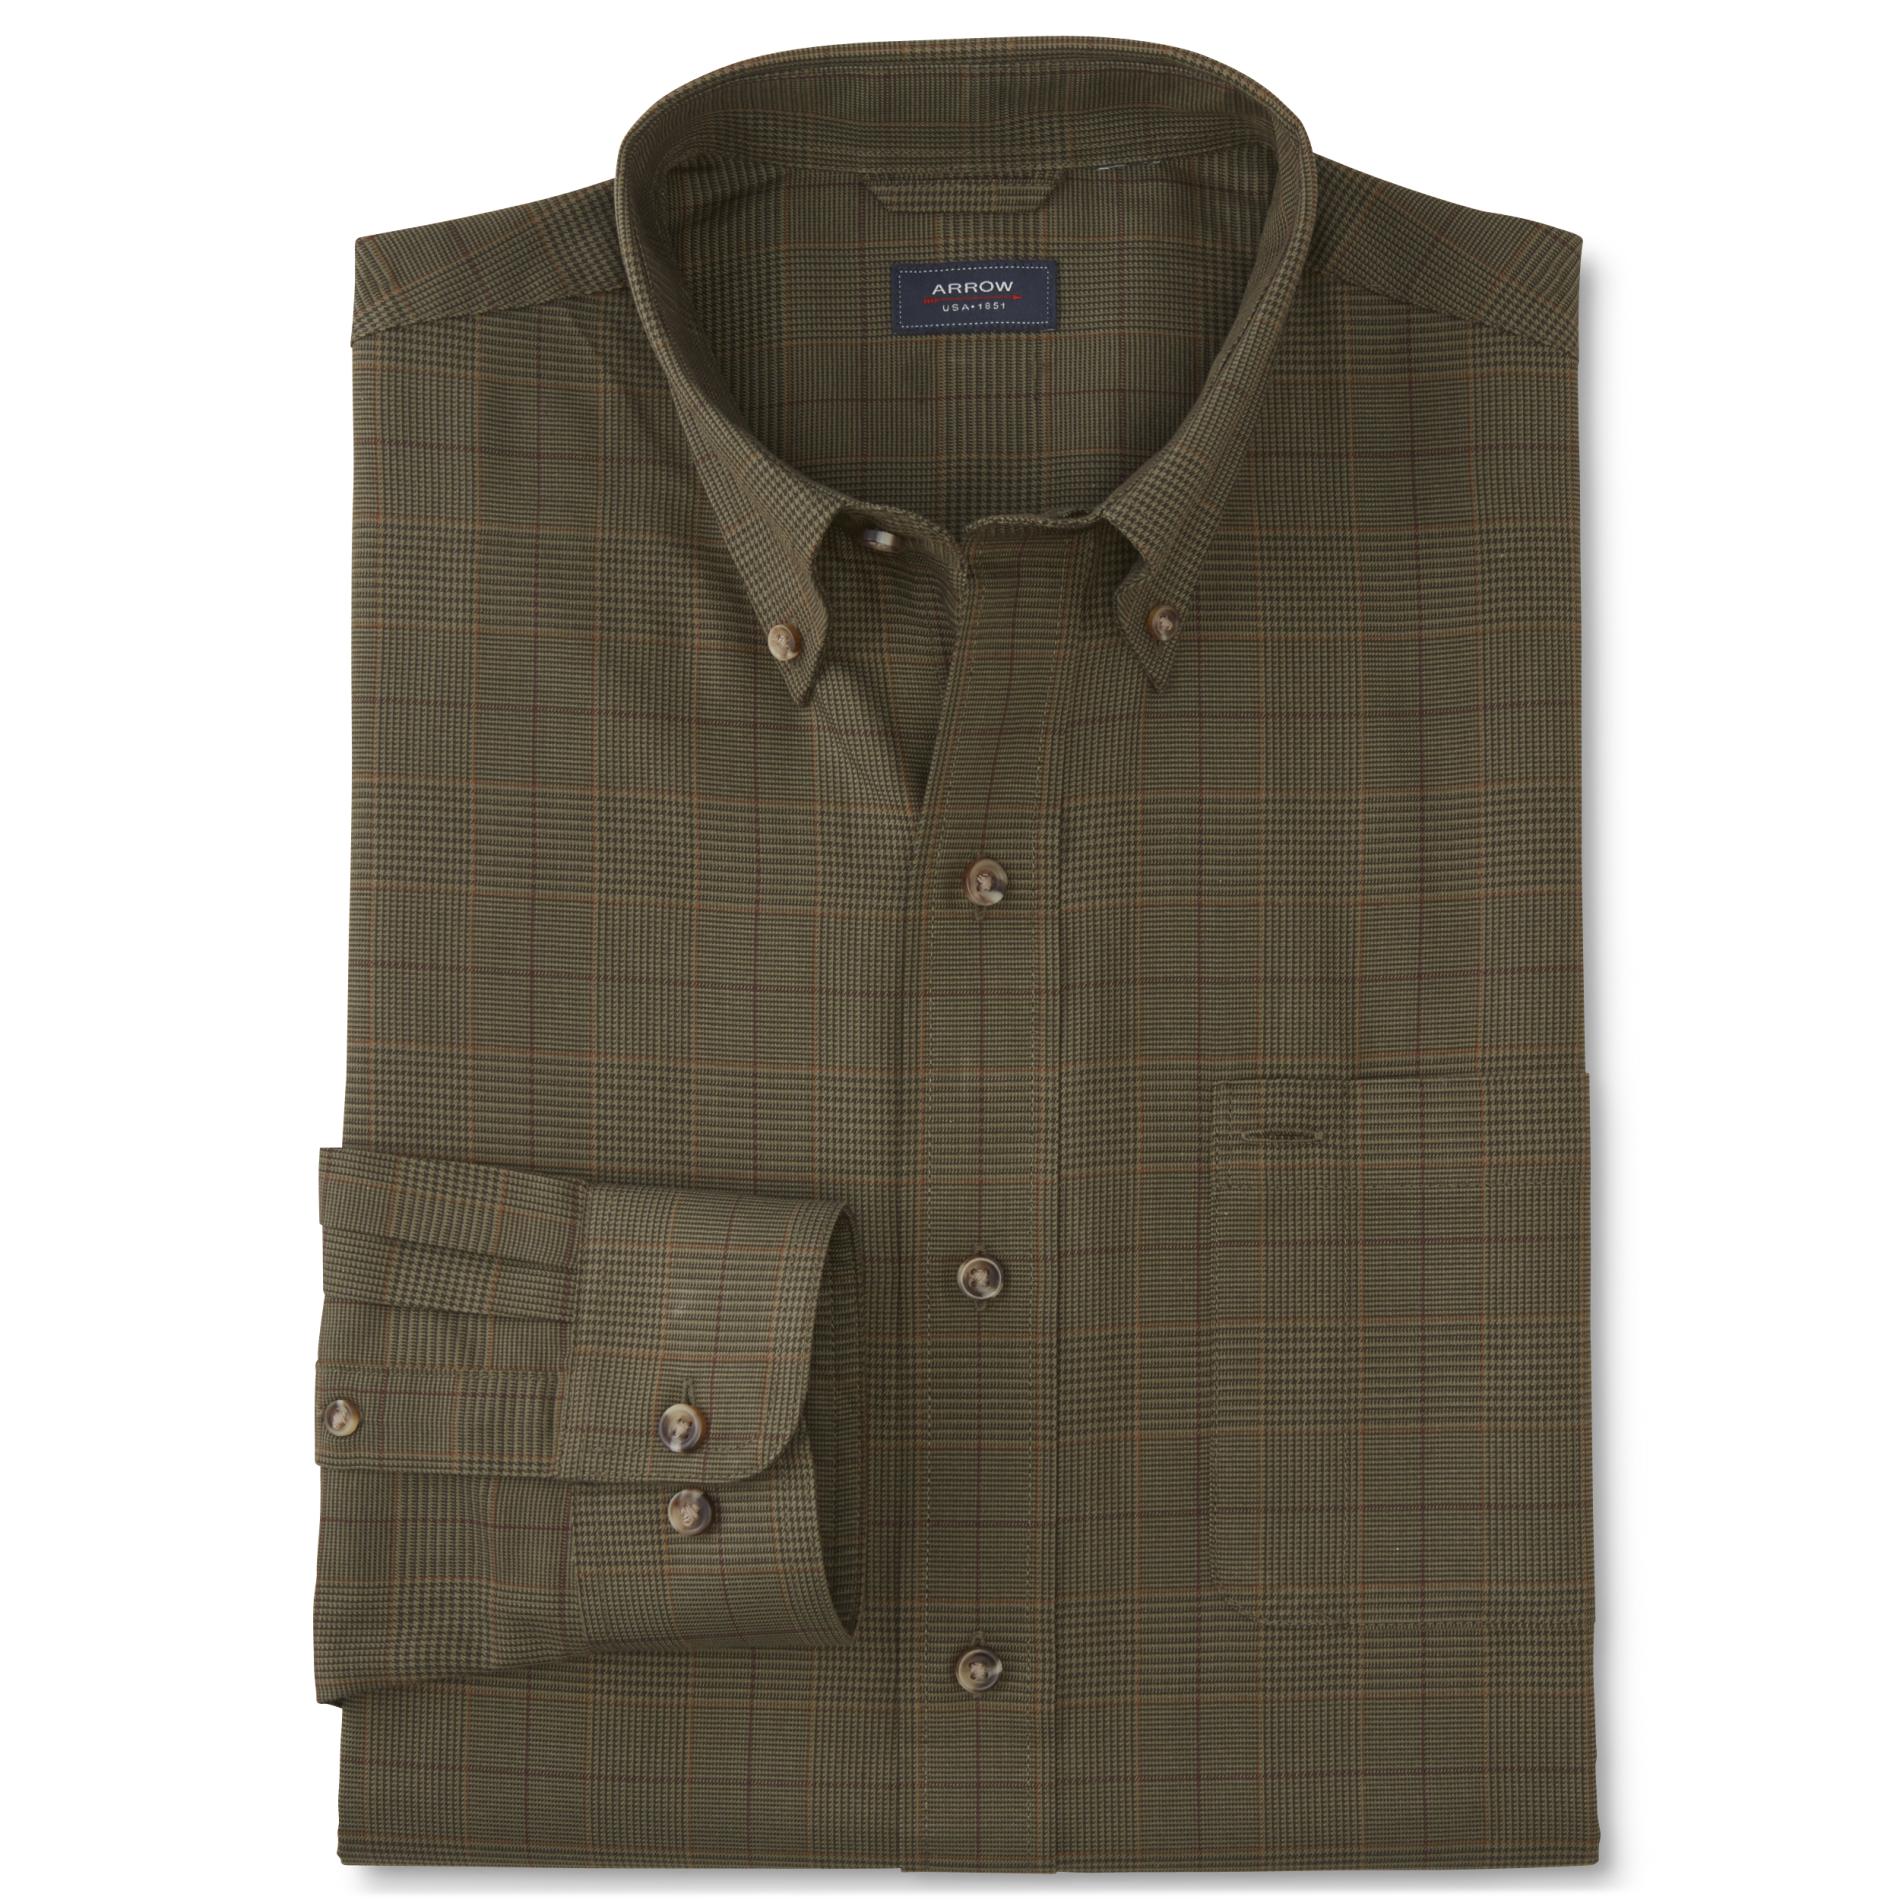 Arrow Men's Button-Front Shirt - Plaid